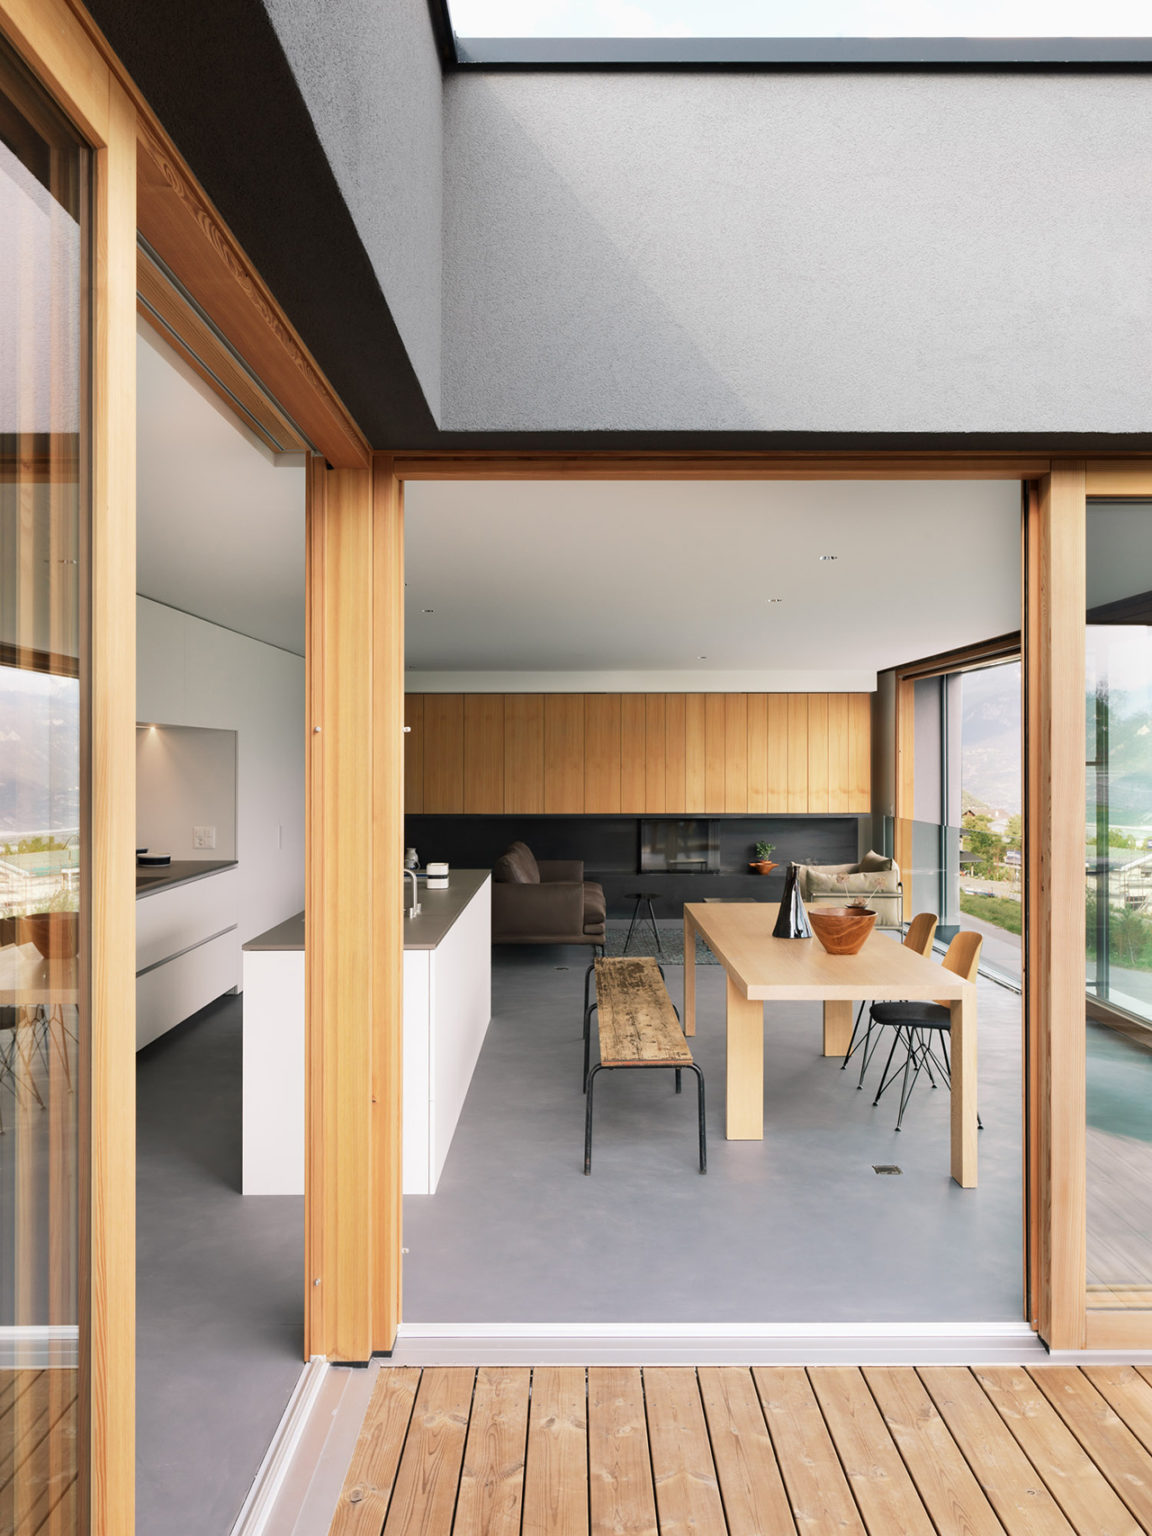 a functional minimalist kitchen design